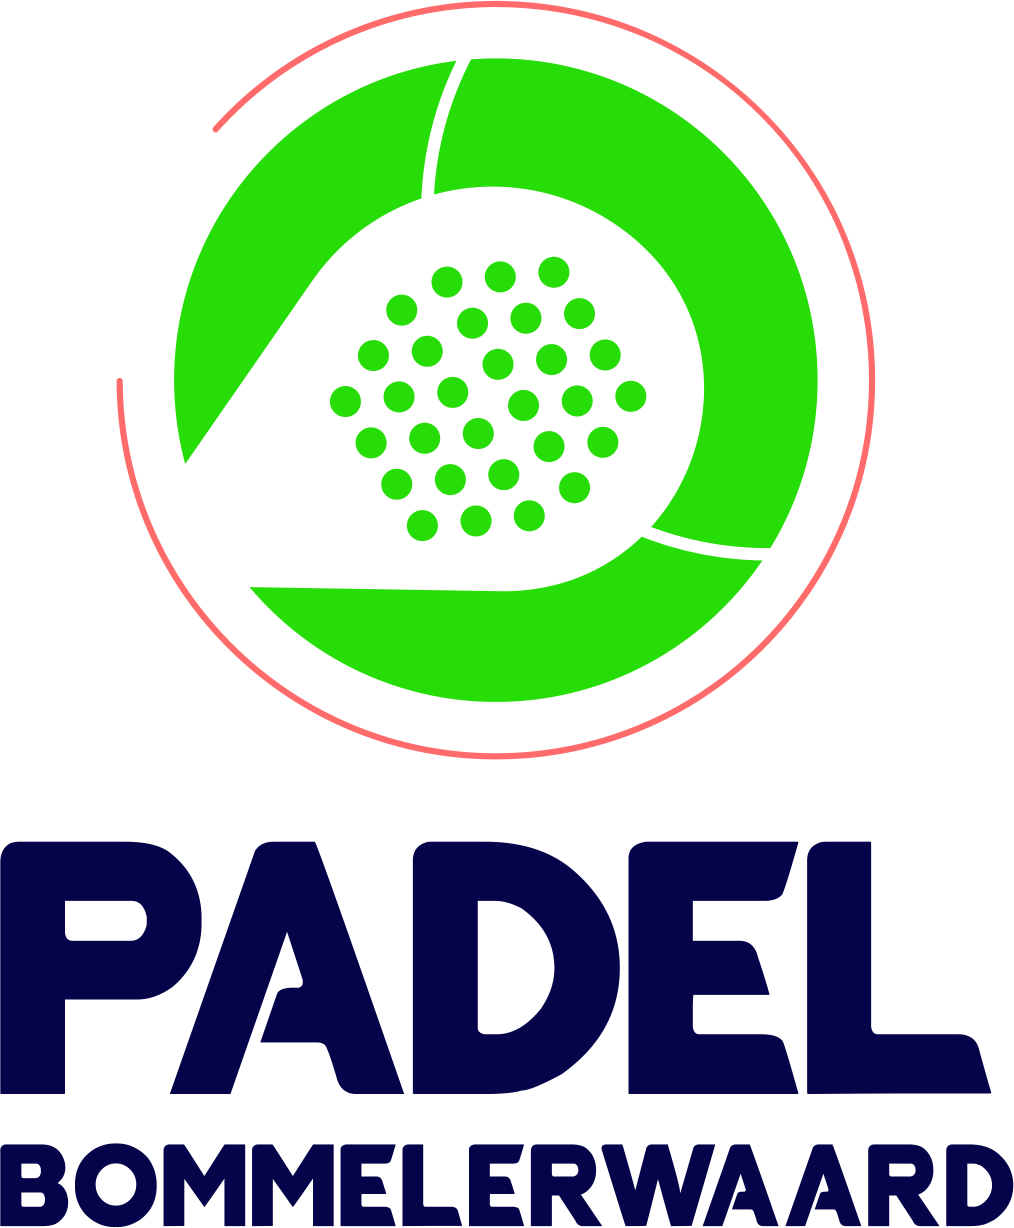 Profile image of venue Padel Bommelerwaard